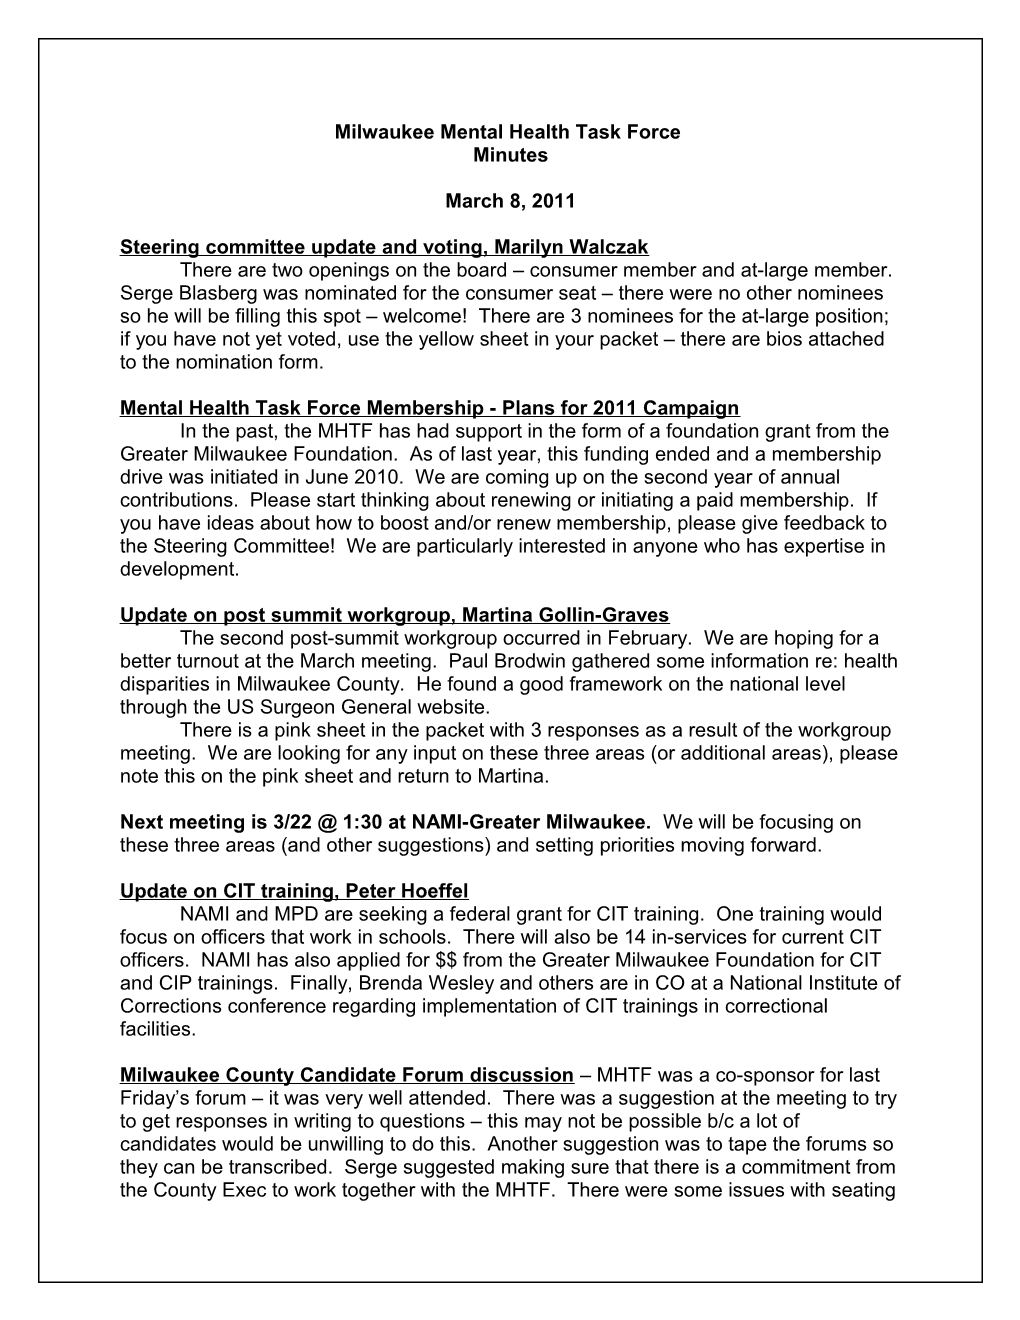 Milwaukee Mental Health Task Force Steering Committee Agenda